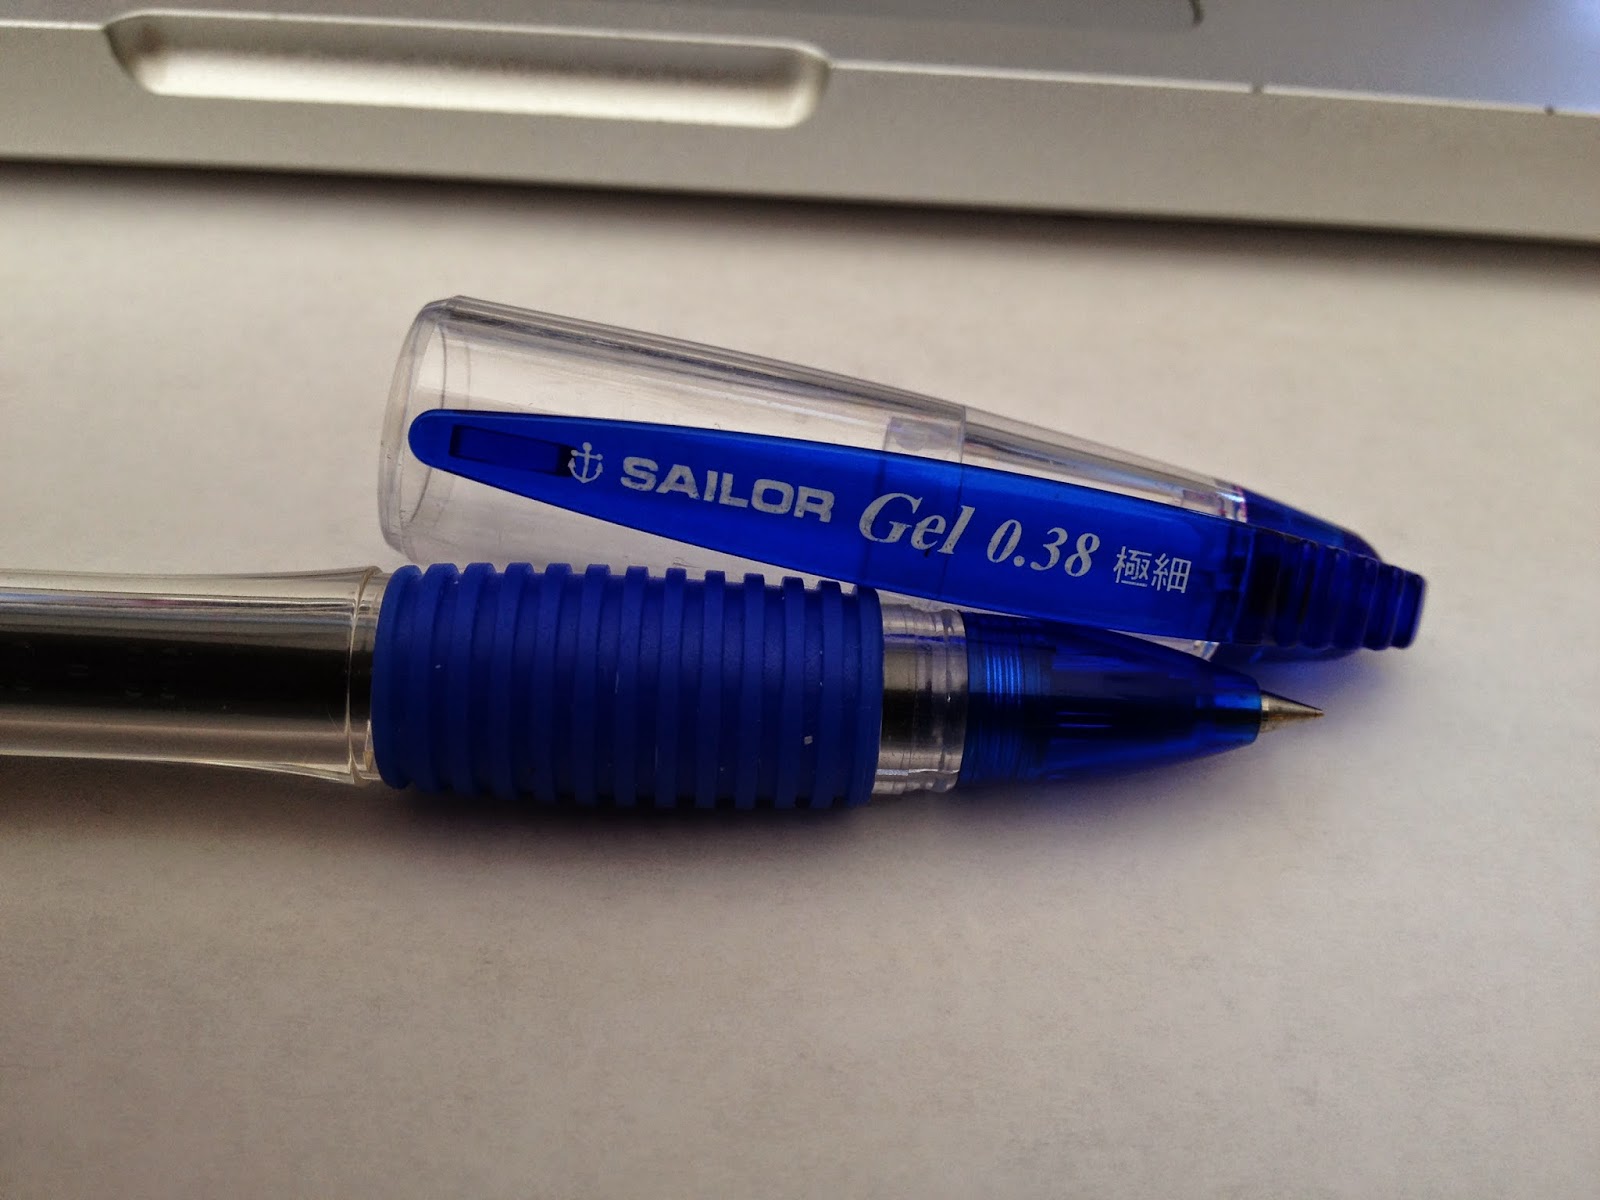 Pilot Super Grip F Retractable Ballpoint Pen 0.7mm / Pack — A Lot Mall